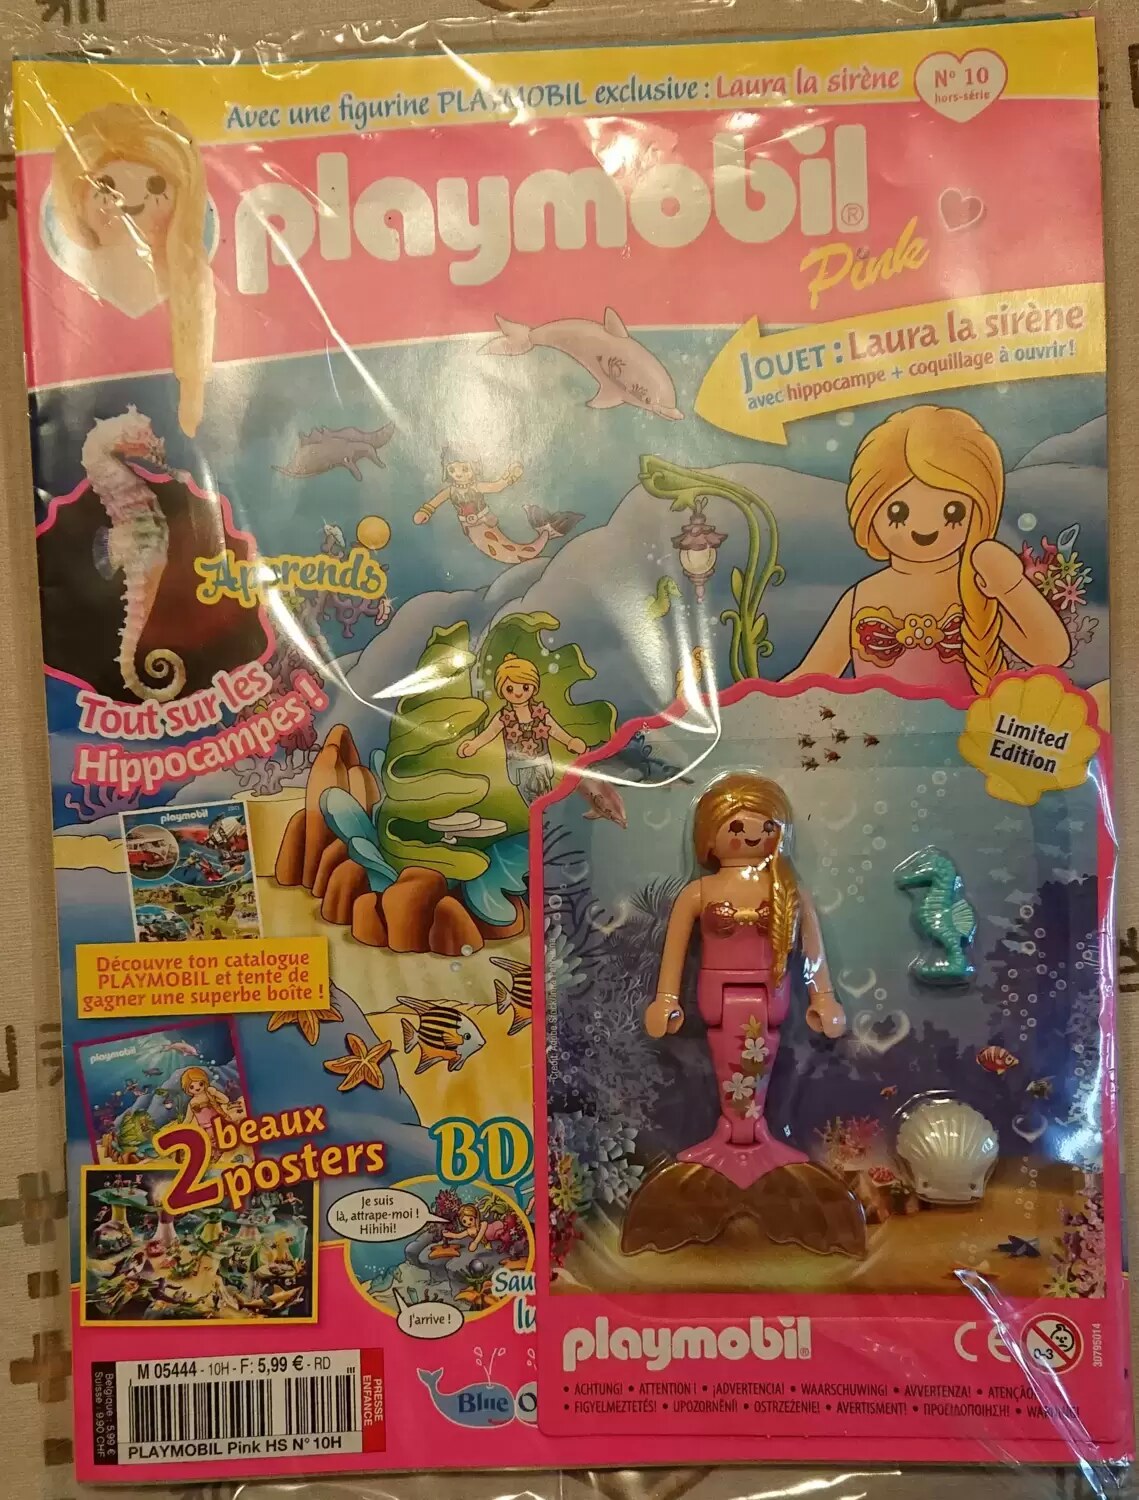 Playmobil Pink - Laura la sirène